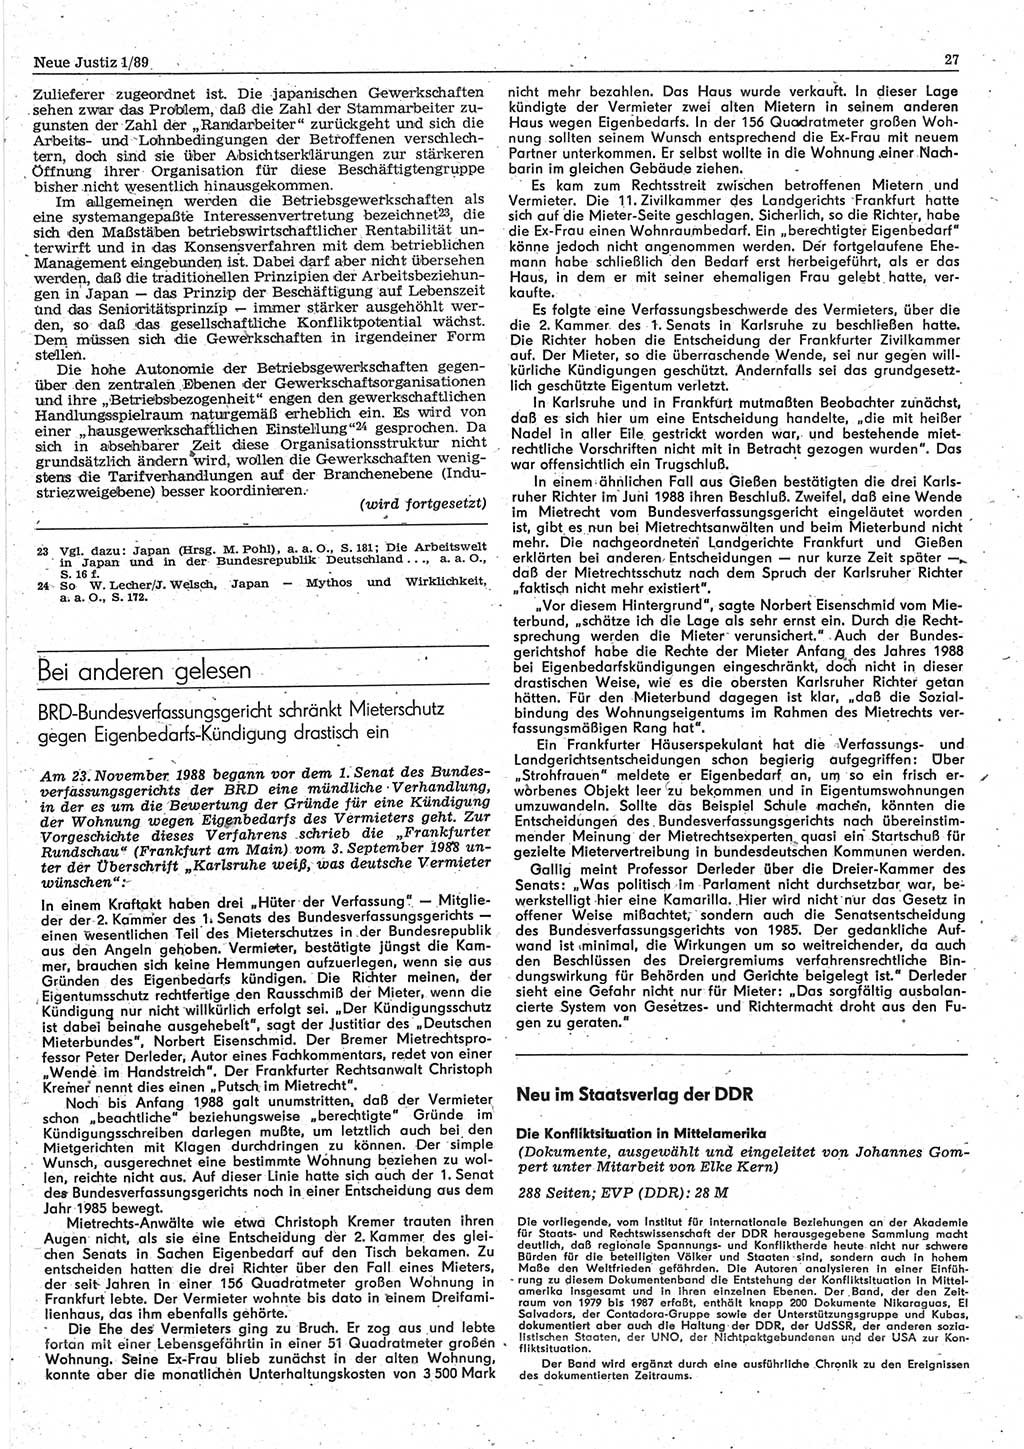 Neue Justiz (NJ), Zeitschrift für sozialistisches Recht und Gesetzlichkeit [Deutsche Demokratische Republik (DDR)], 43. Jahrgang 1989, Seite 27 (NJ DDR 1989, S. 27)